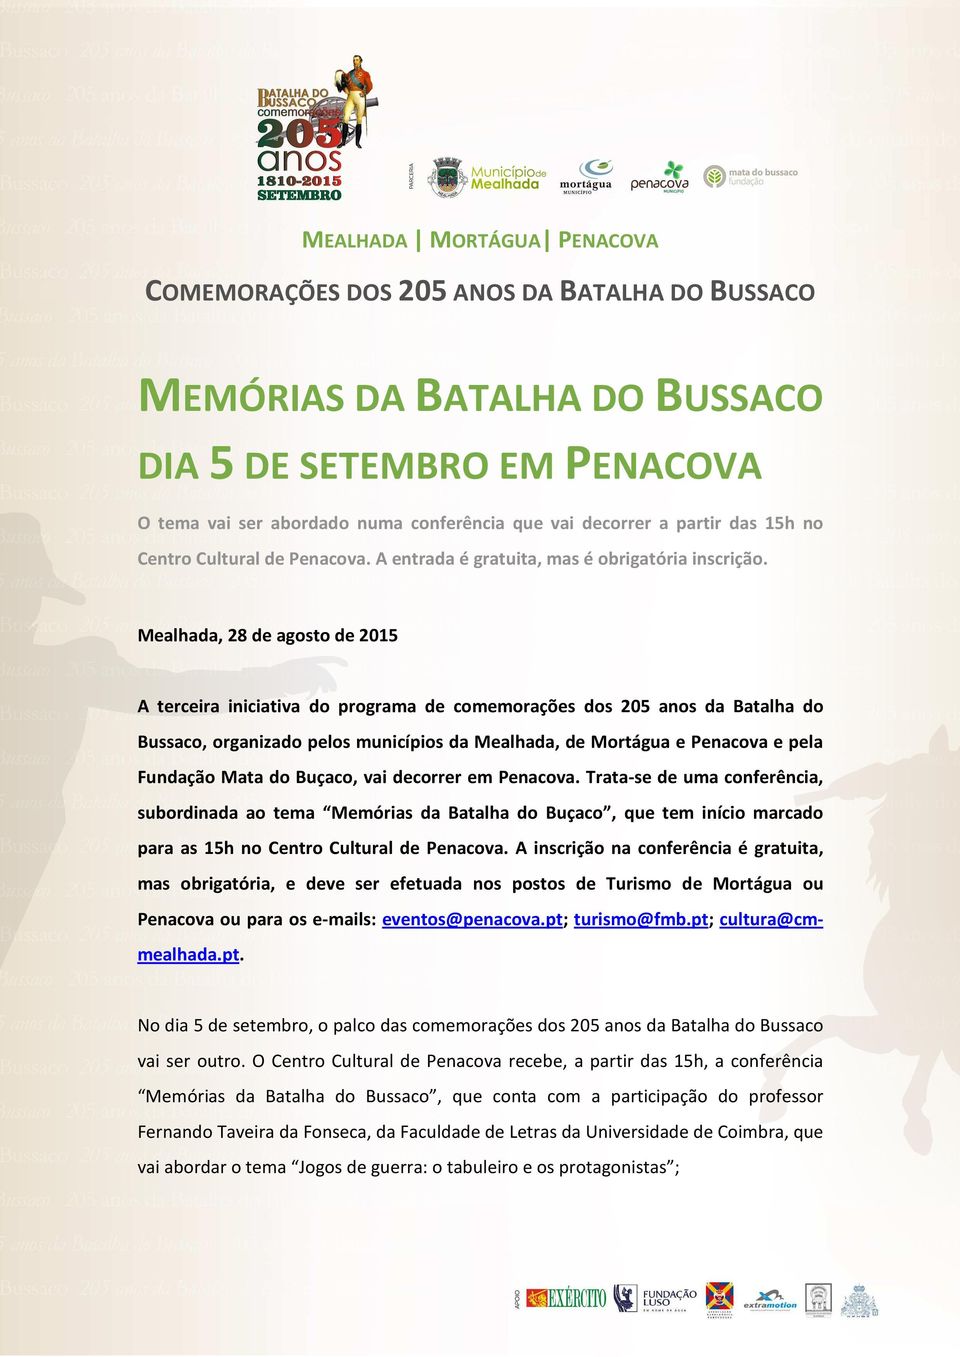 Mealhada, 28 de agosto de 2015 A terceira iniciativa do programa de comemorações dos 205 anos da Batalha do Bussaco, organizado pelos municípios da Mealhada, de Mortágua e Penacova e pela Fundação